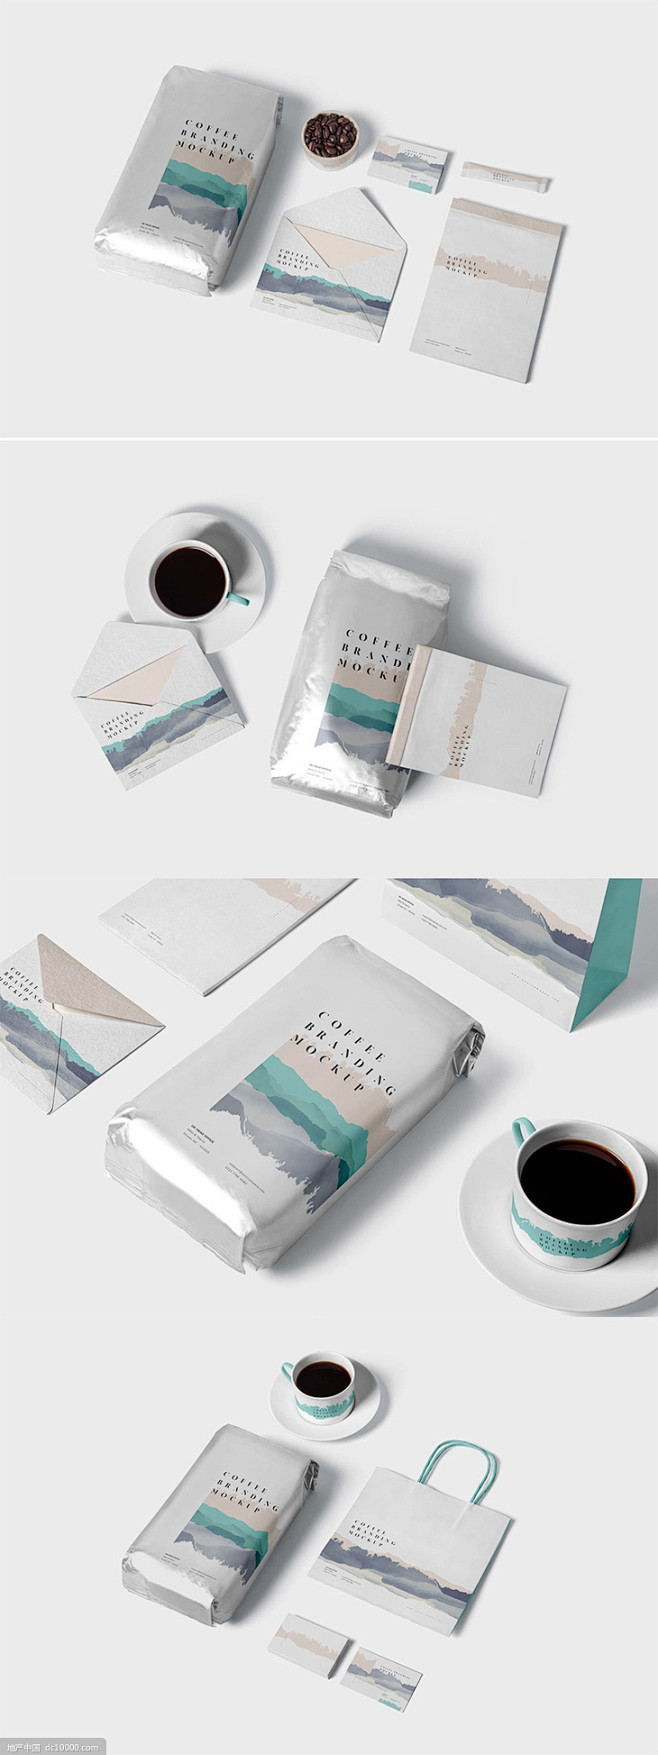 咖啡品牌VI包装设计展示套装样机素材下载...